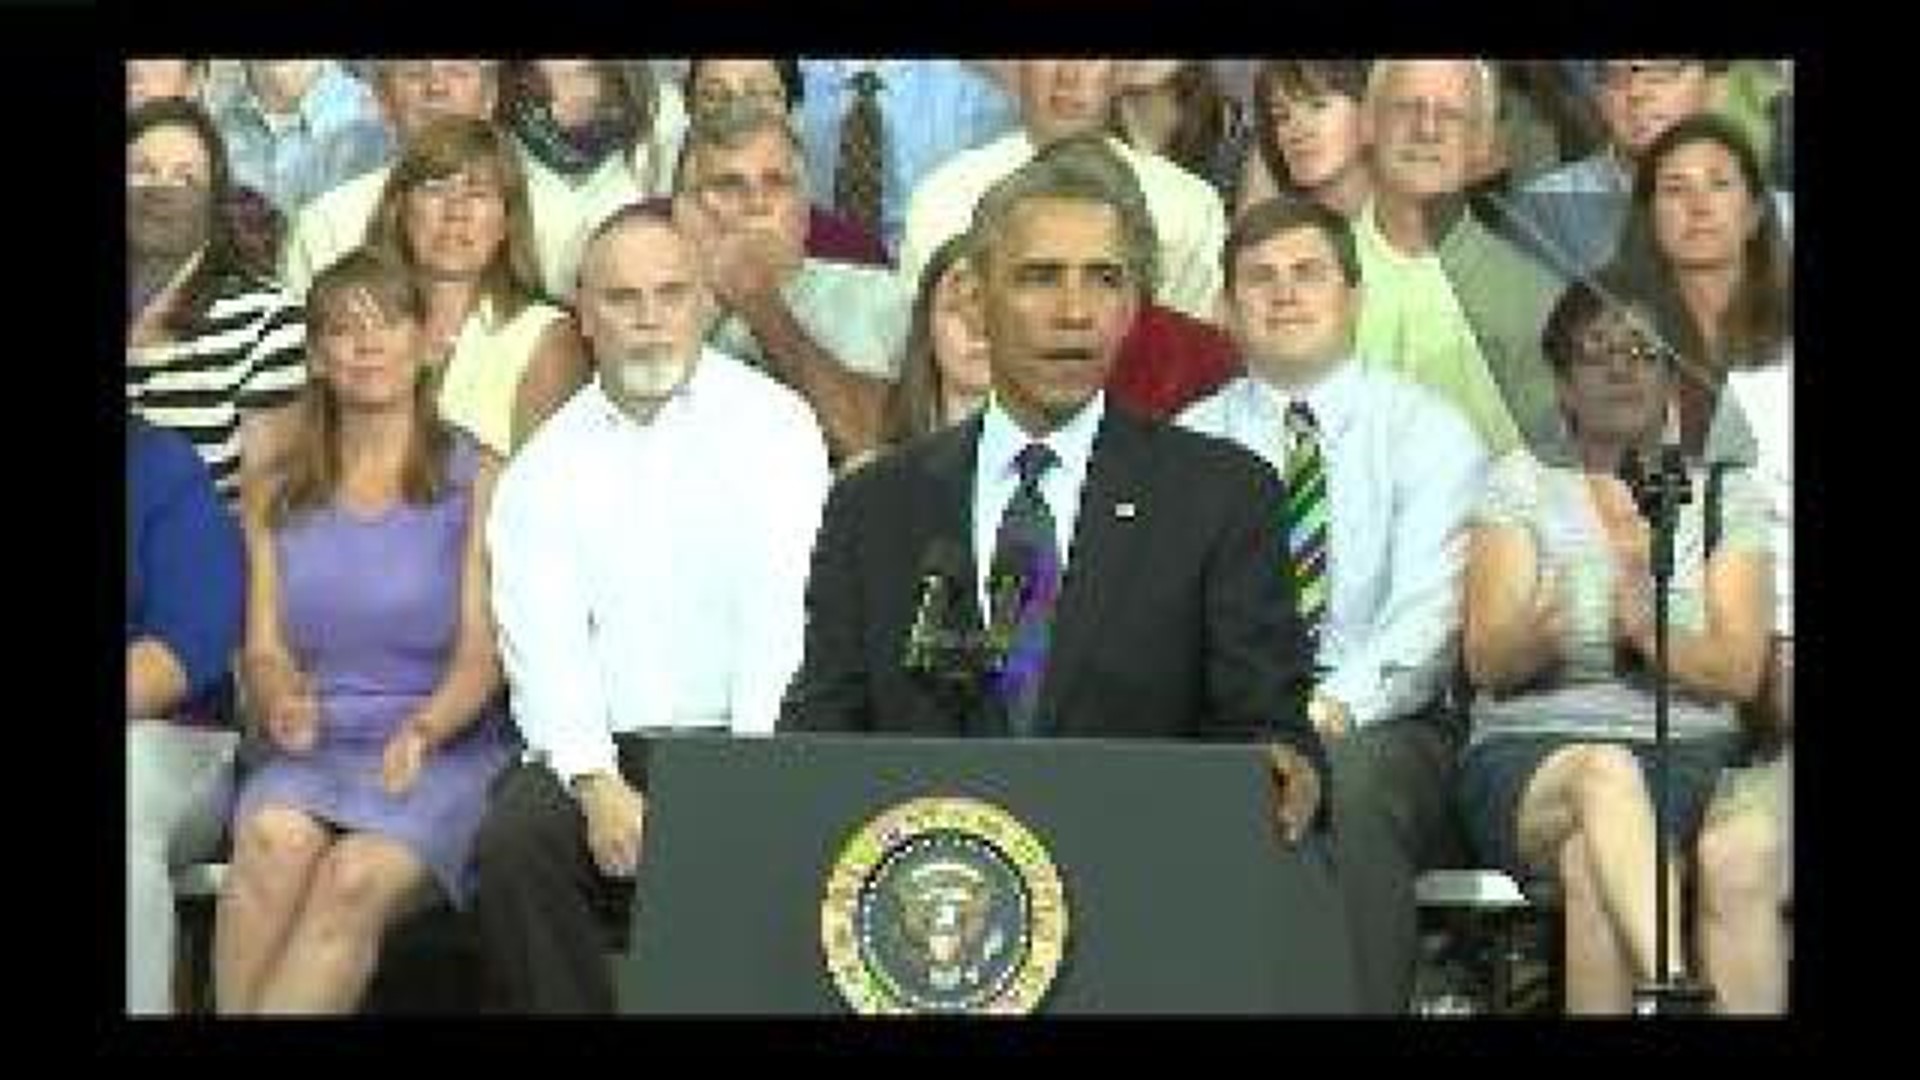 President Obama speaks in Galesburg - clip 2 of 7